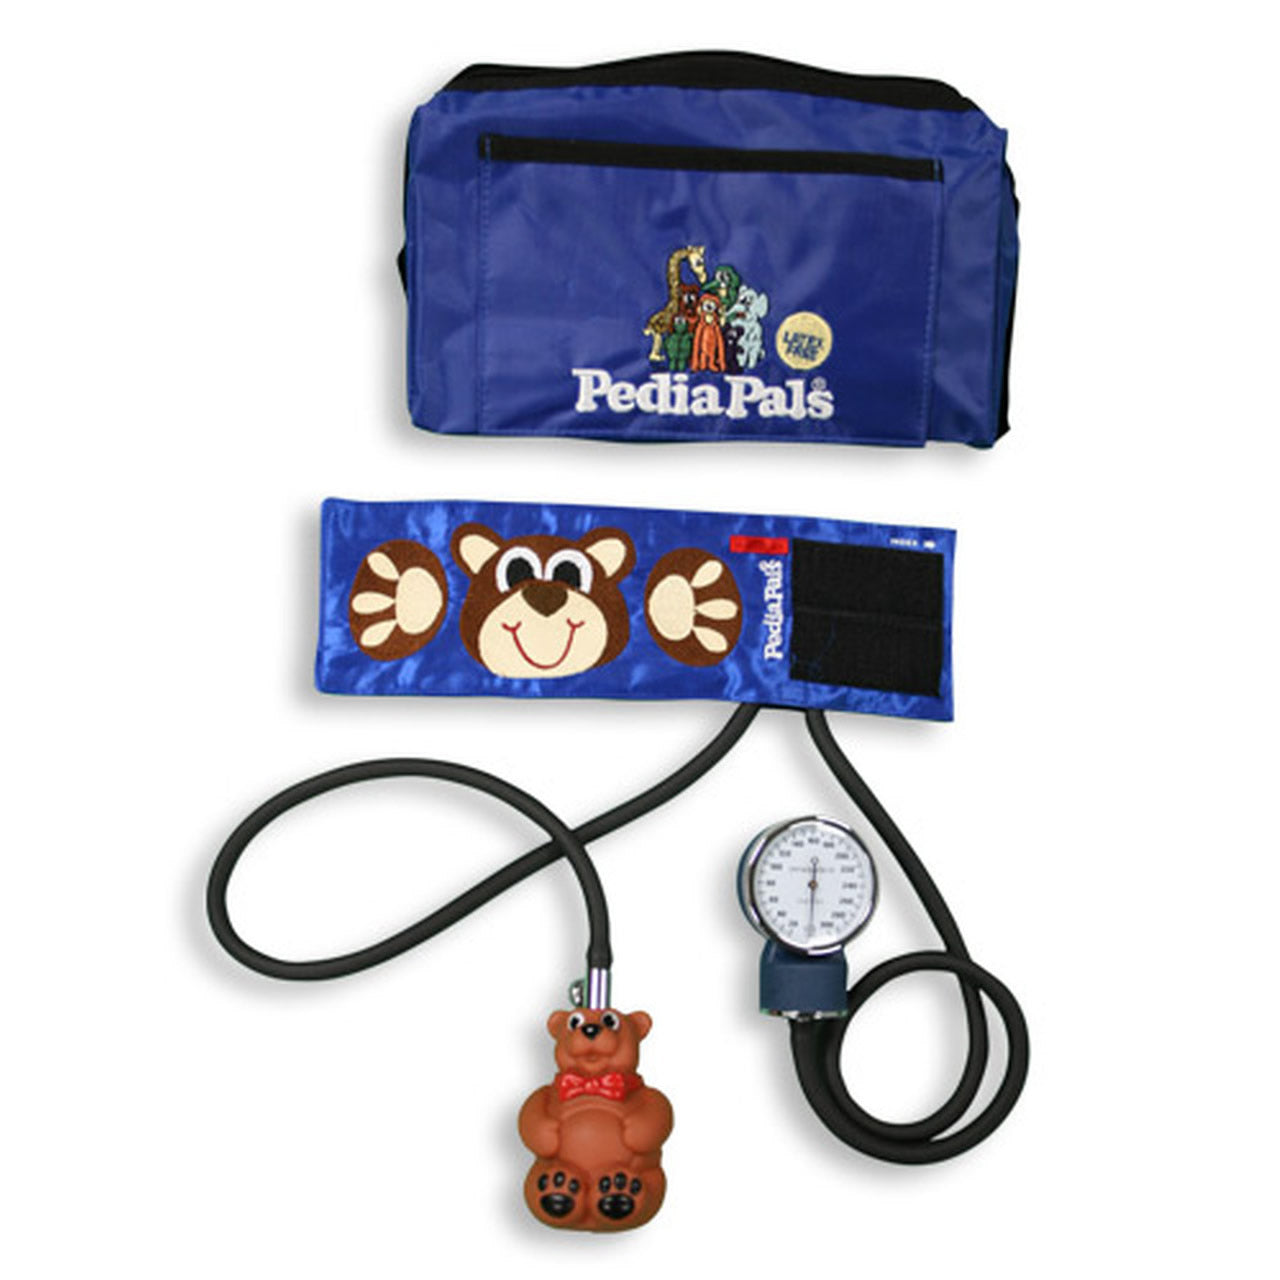 http://pediapals.com/cdn/shop/products/Blood-Pressure-Kits-Benjamin-Bear-Pedia-Pals.jpg?v=1697340219